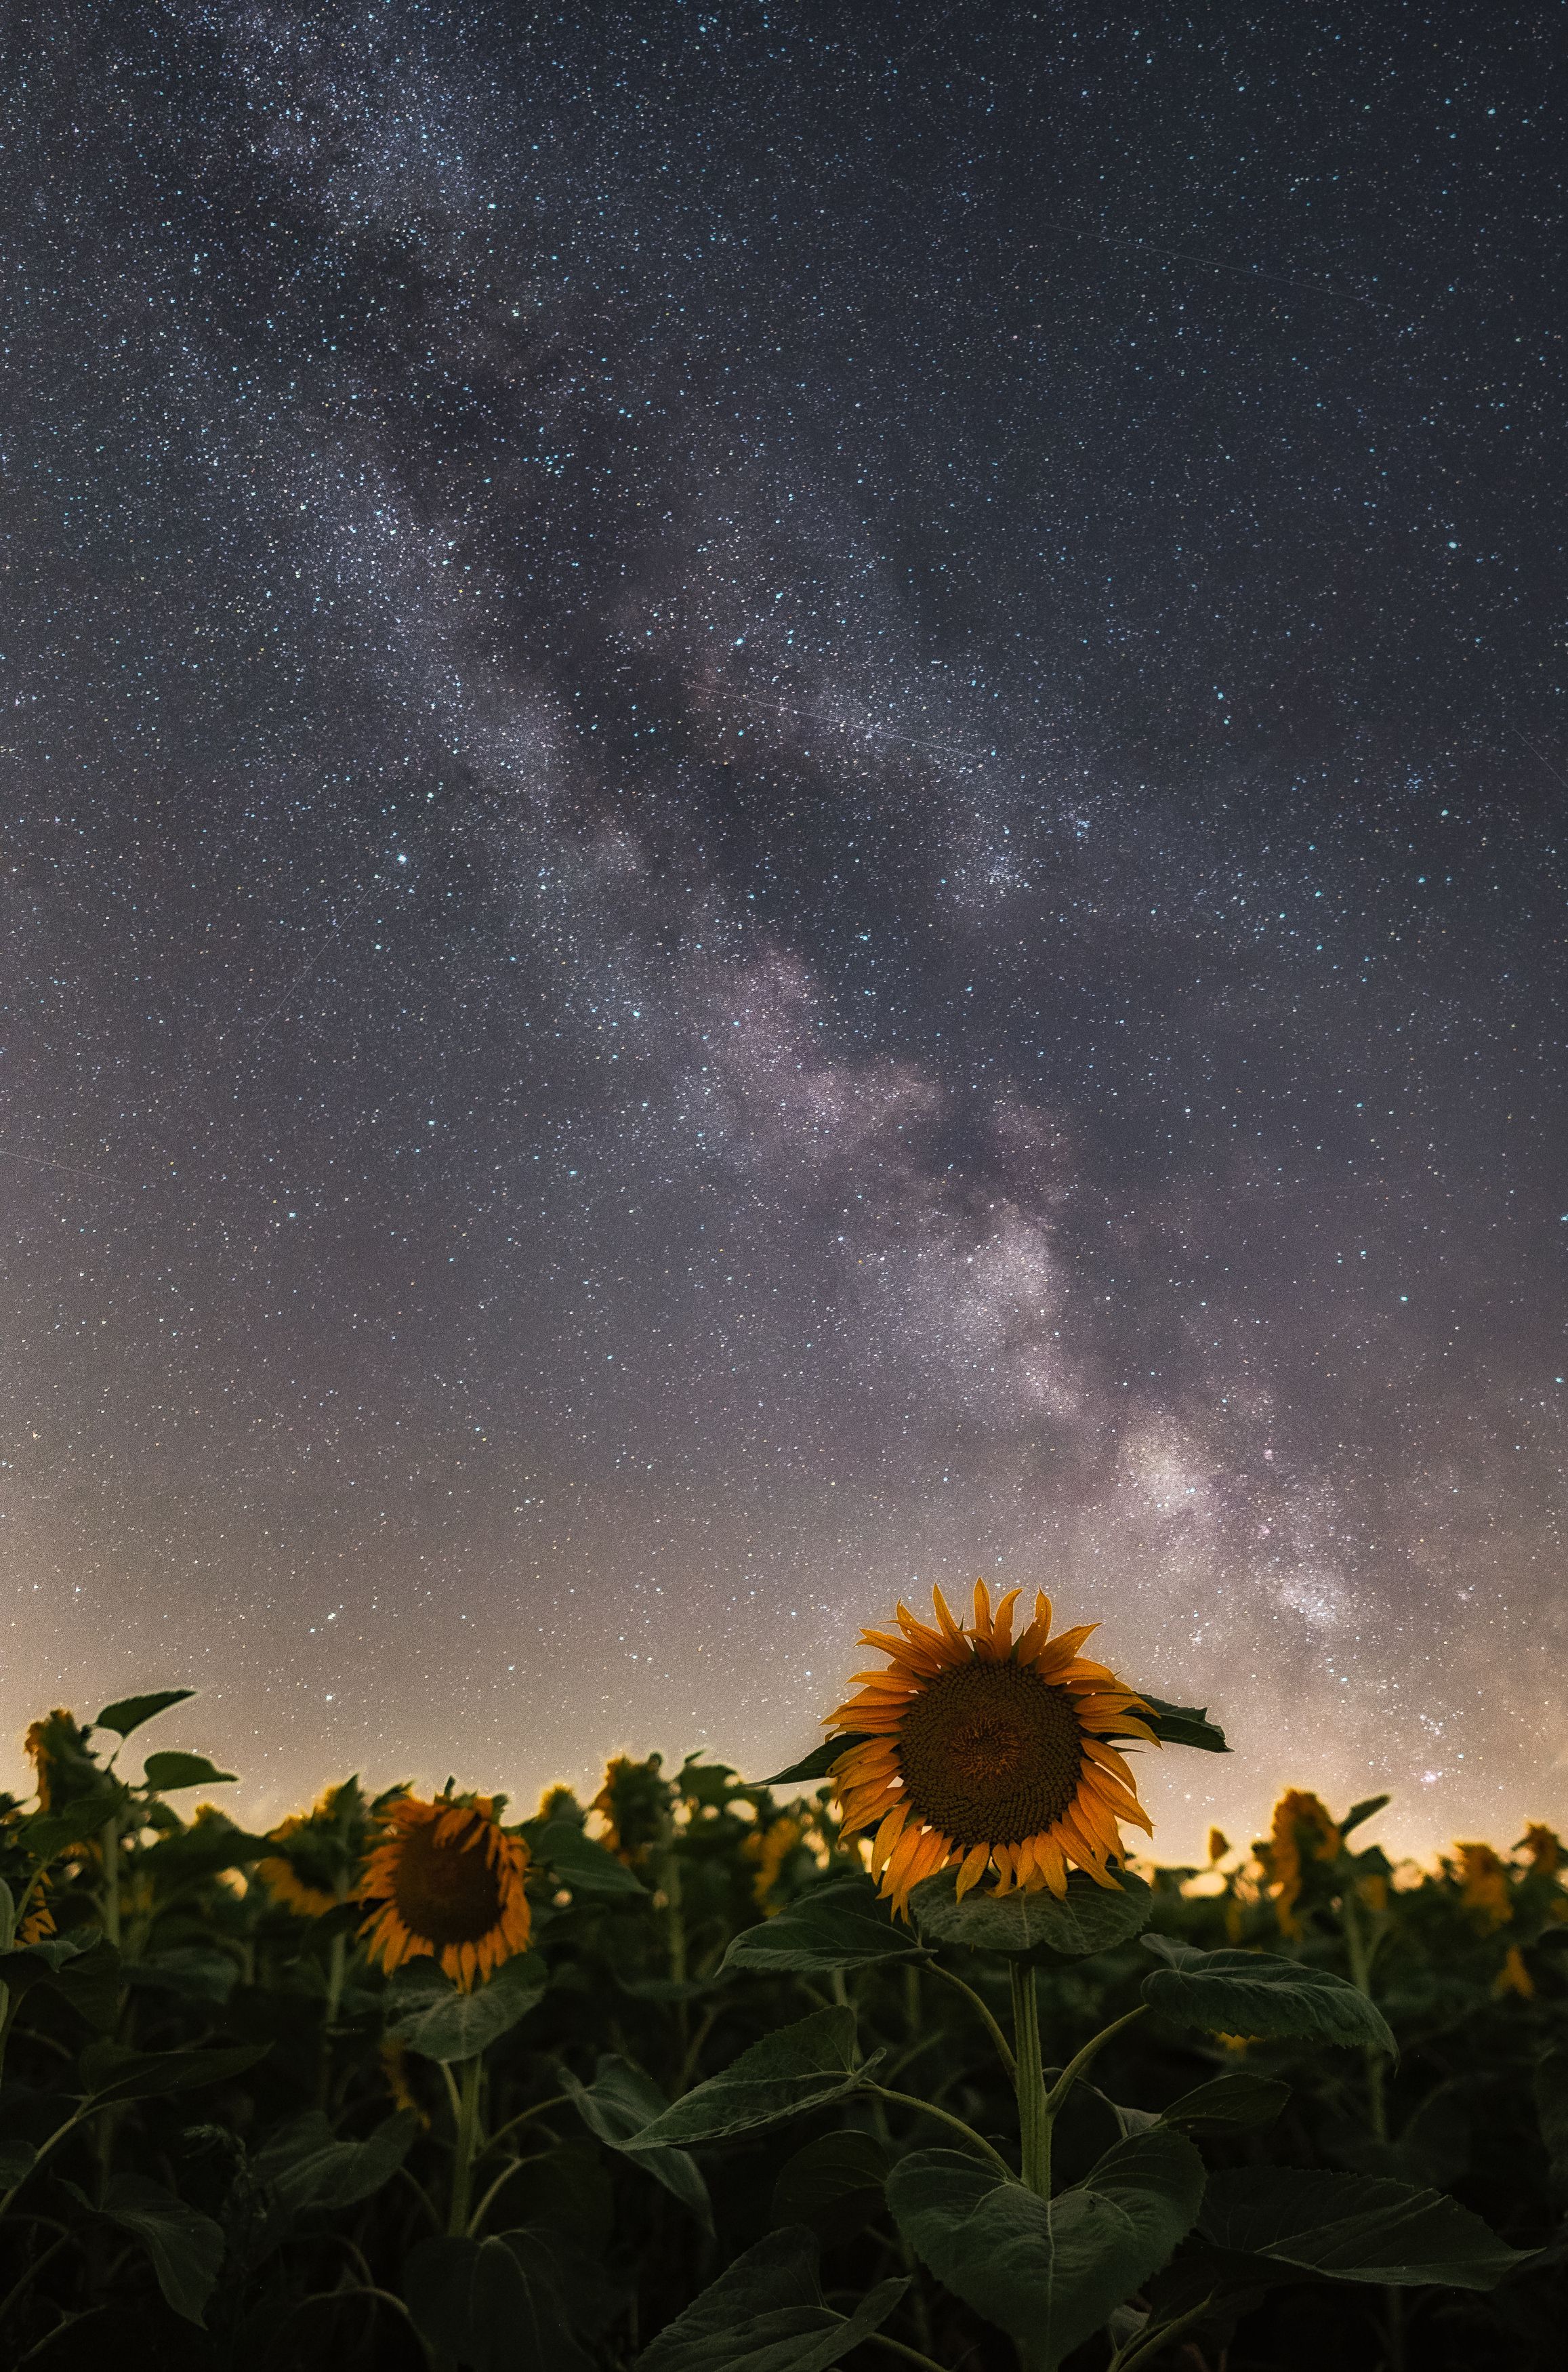 Night, Sunflowers, milky way, sky, universum, stars, nikon z6, Stanislav Judas